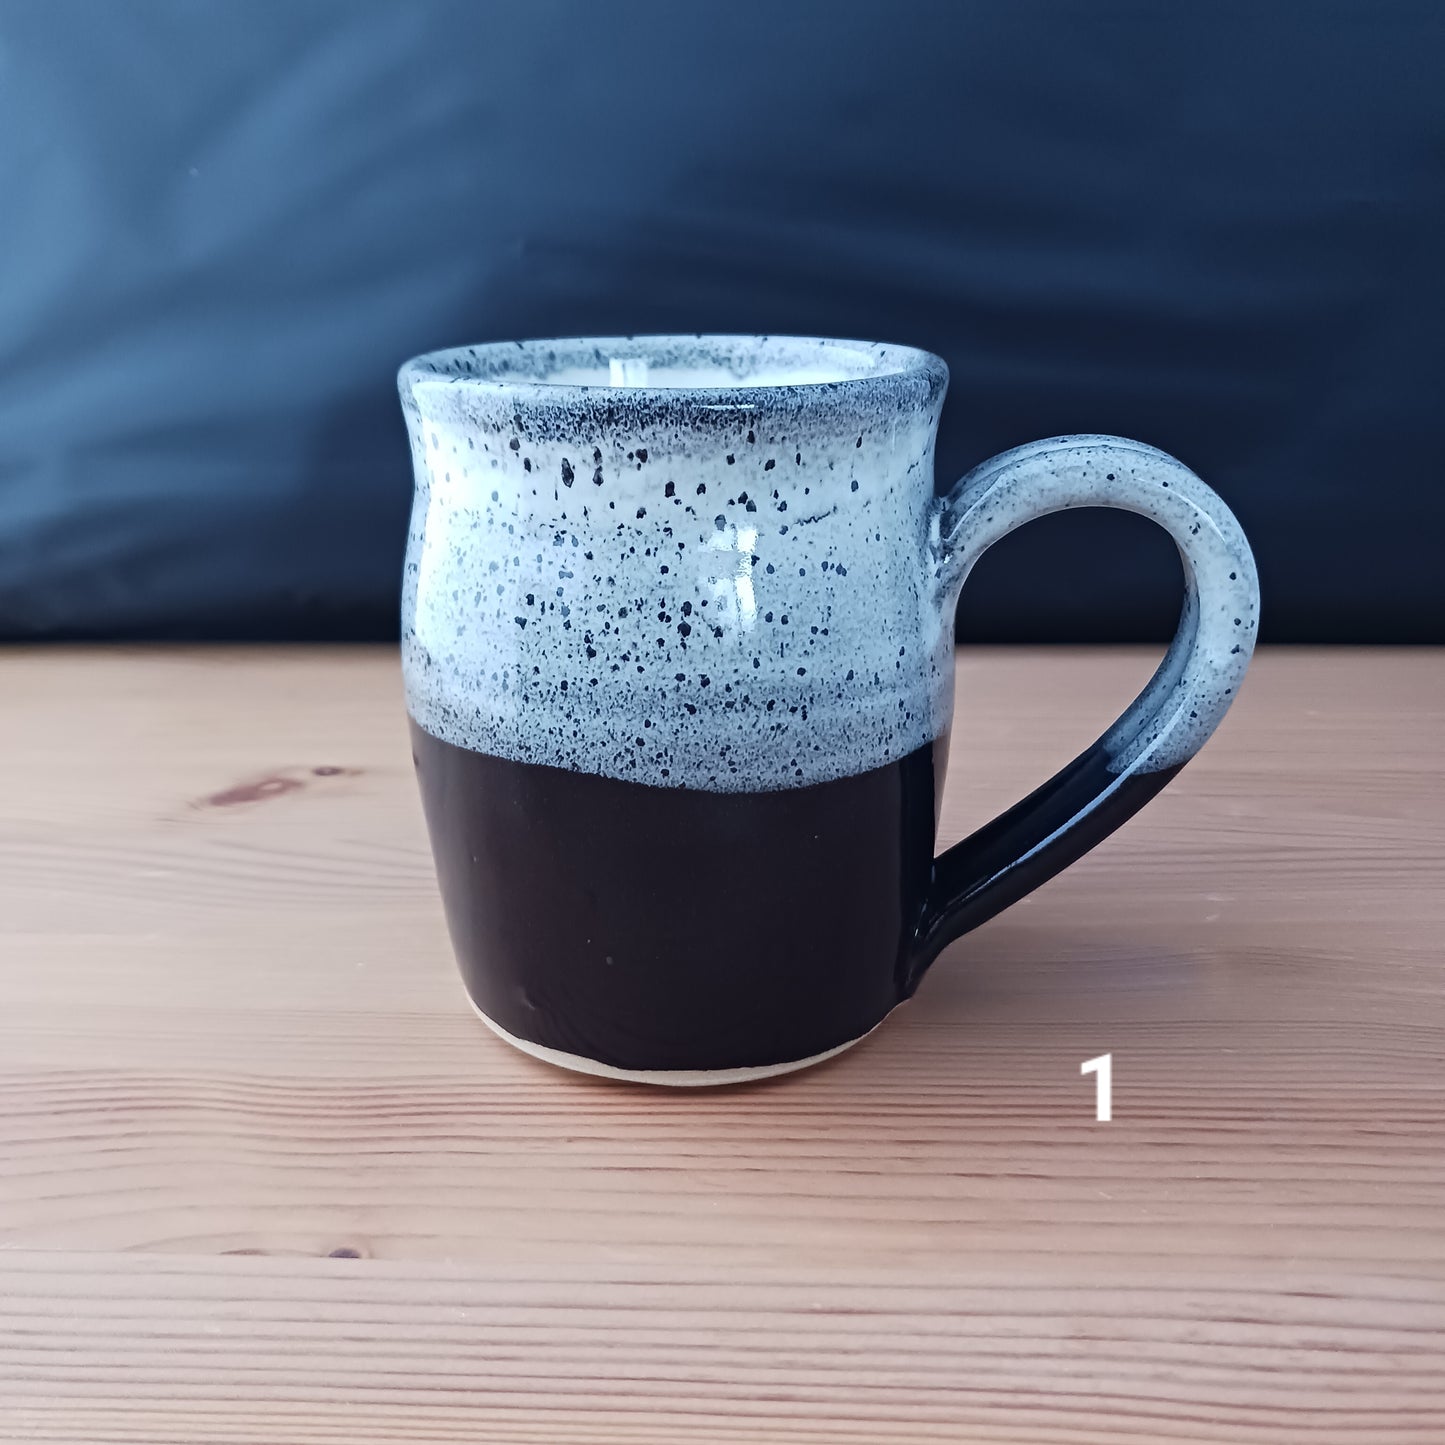 Black speckled mug collection